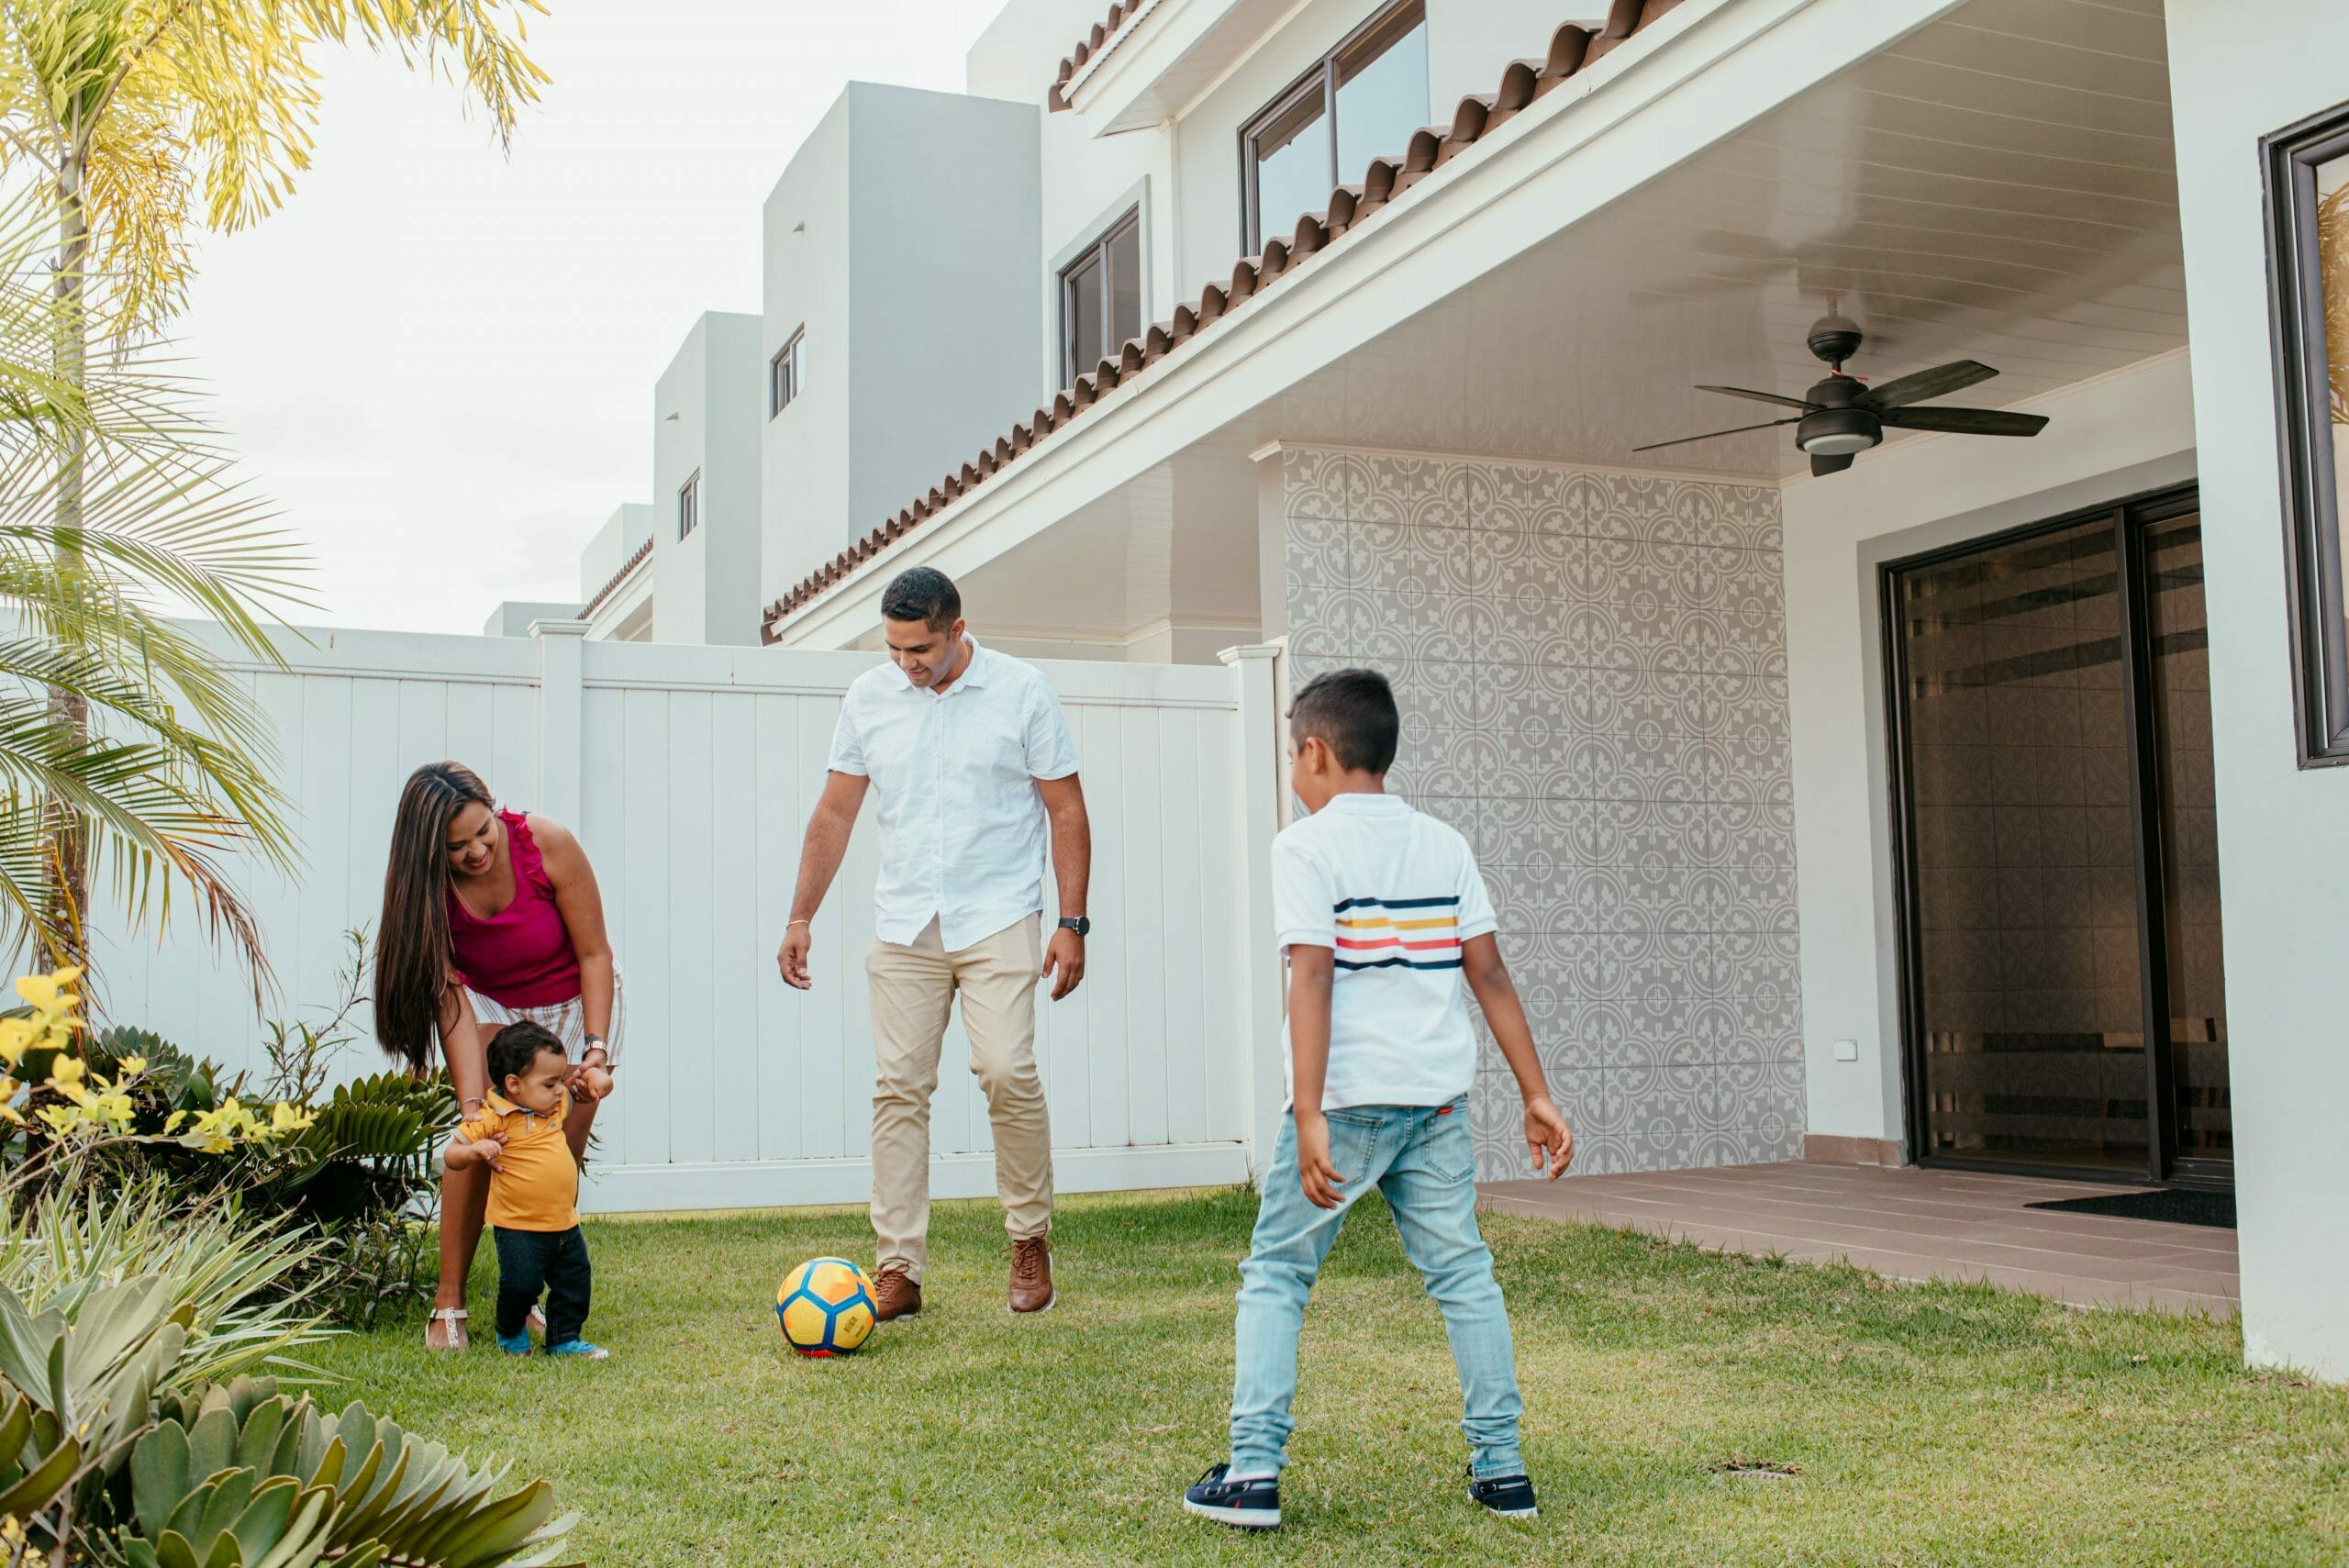 Madre, padre y 2 hijos jugando con la pelota en el patio de su casa en Paseo del Norte.